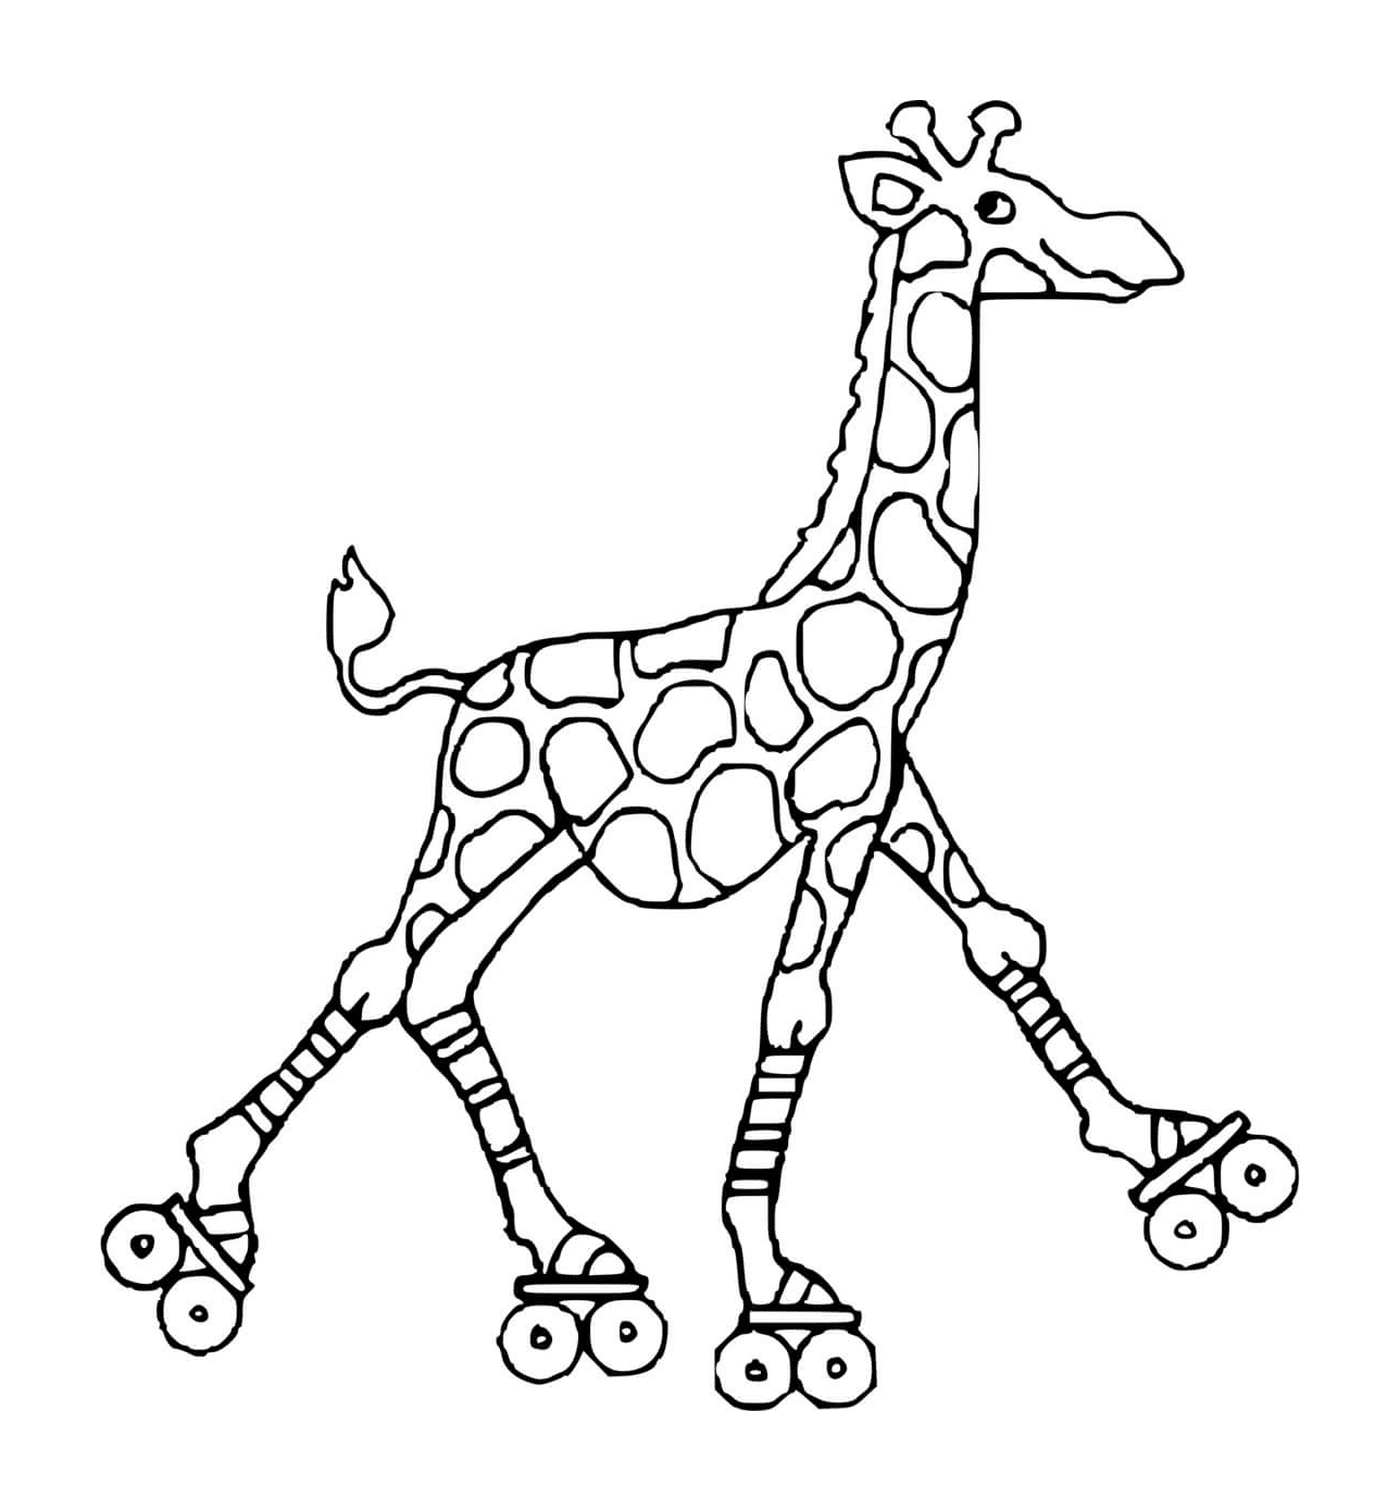 coloriage girafe avec des patins a roulettes